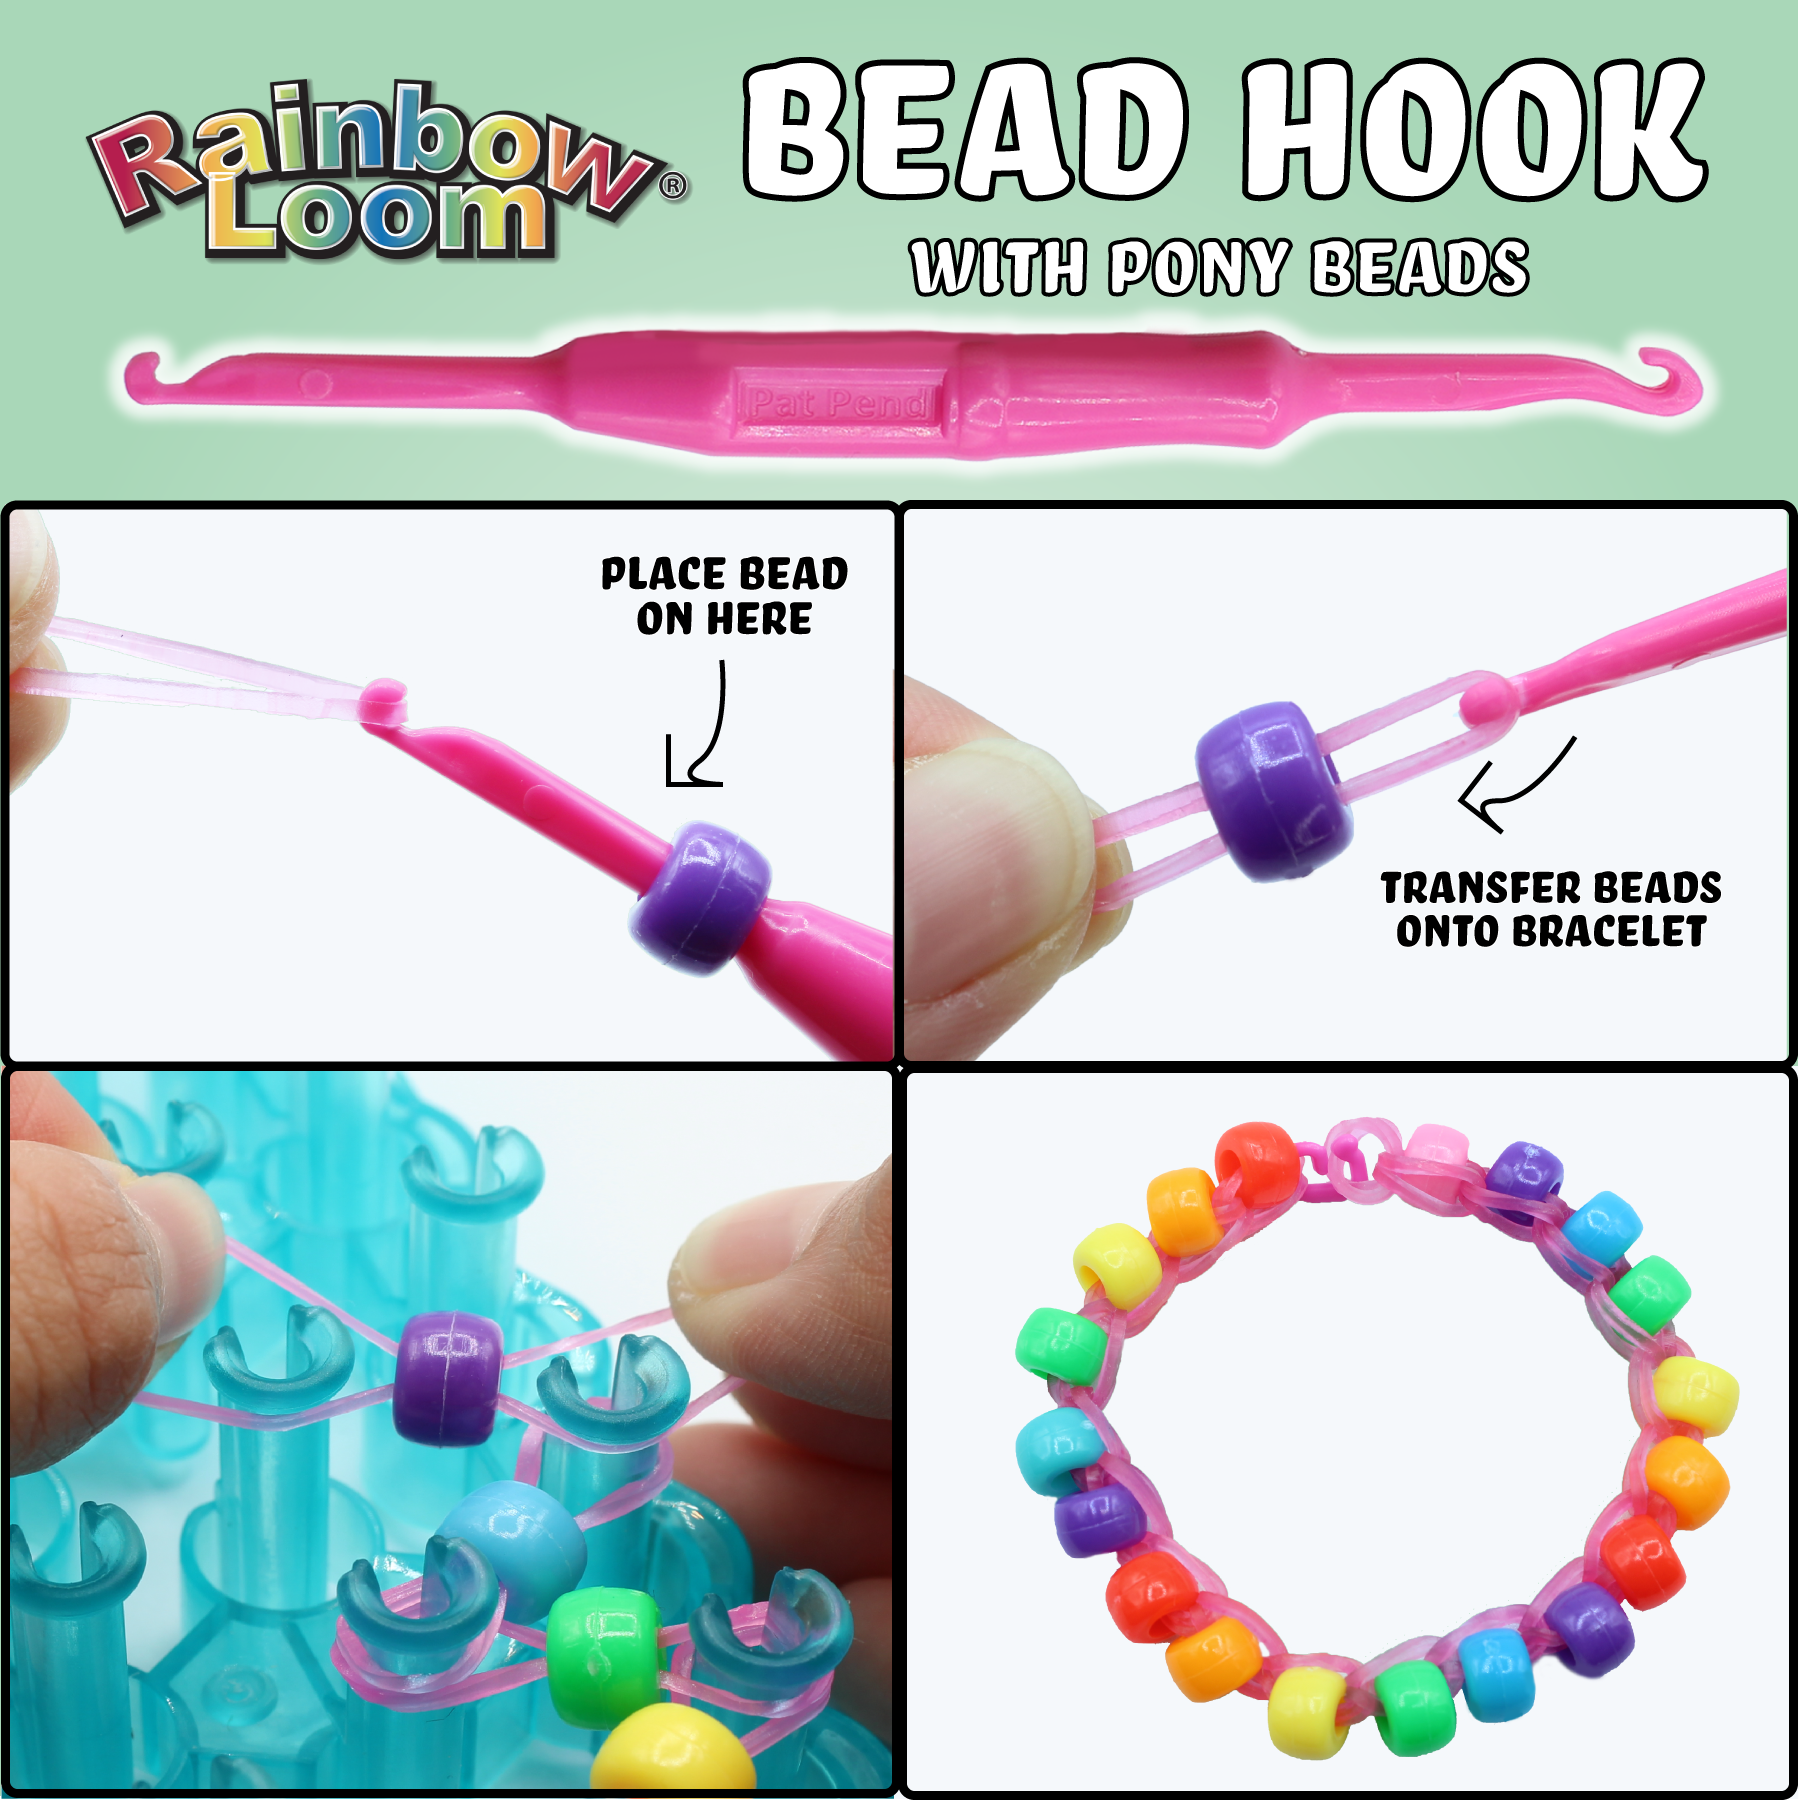 Rainbow Loom Loomi-Pals Combo Set Bracelet Kit